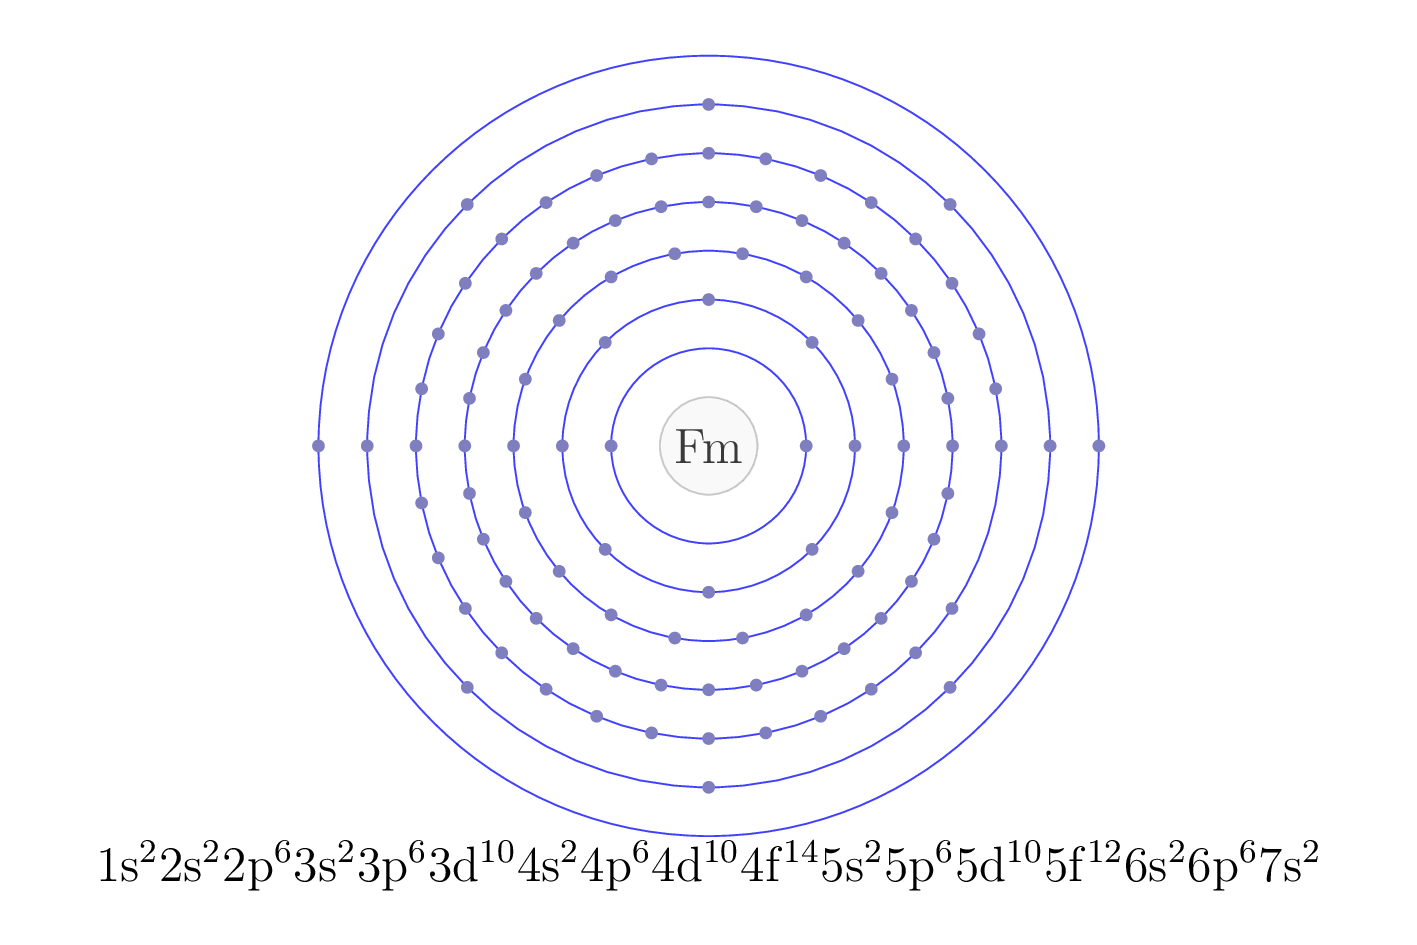 electron configuration of element Fm